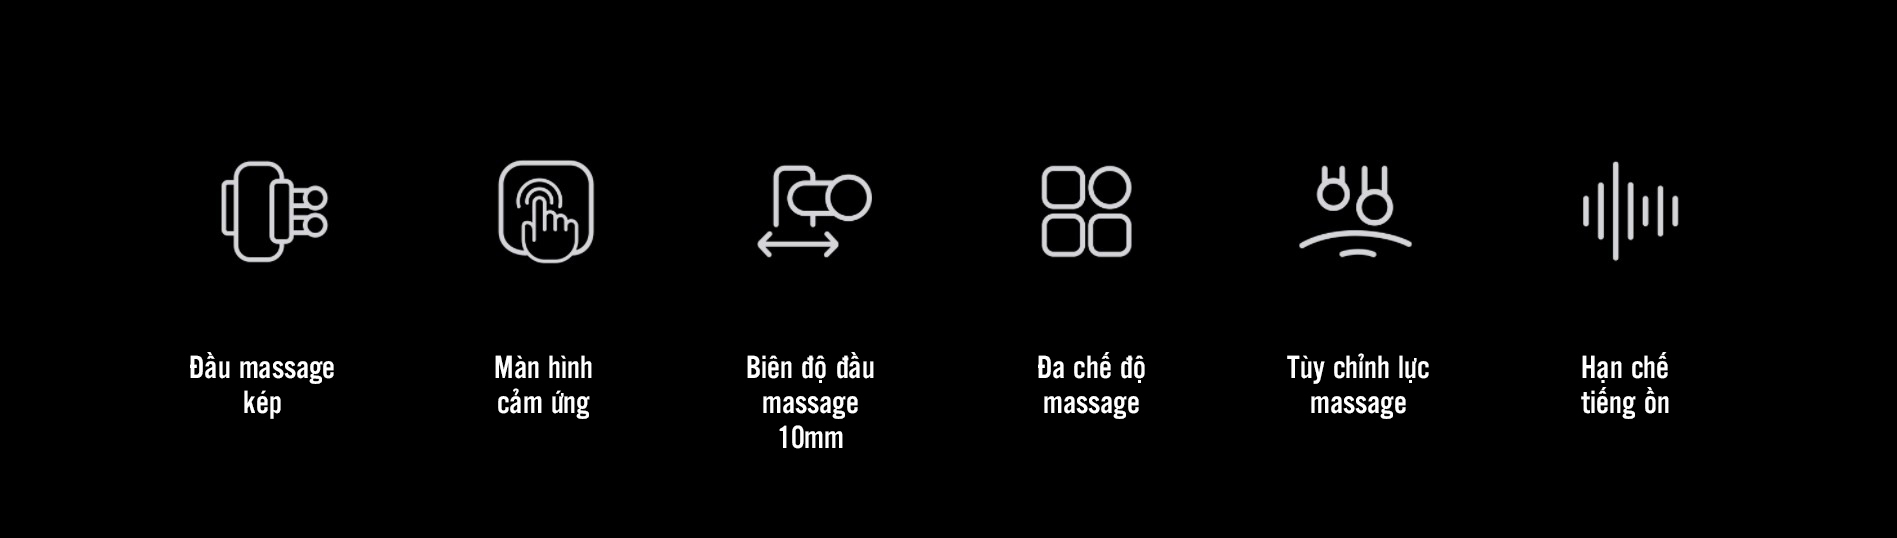 may massage kica 3.13 Máy massage cơ đa năng KiCA 3 - Blue - YCB.vn